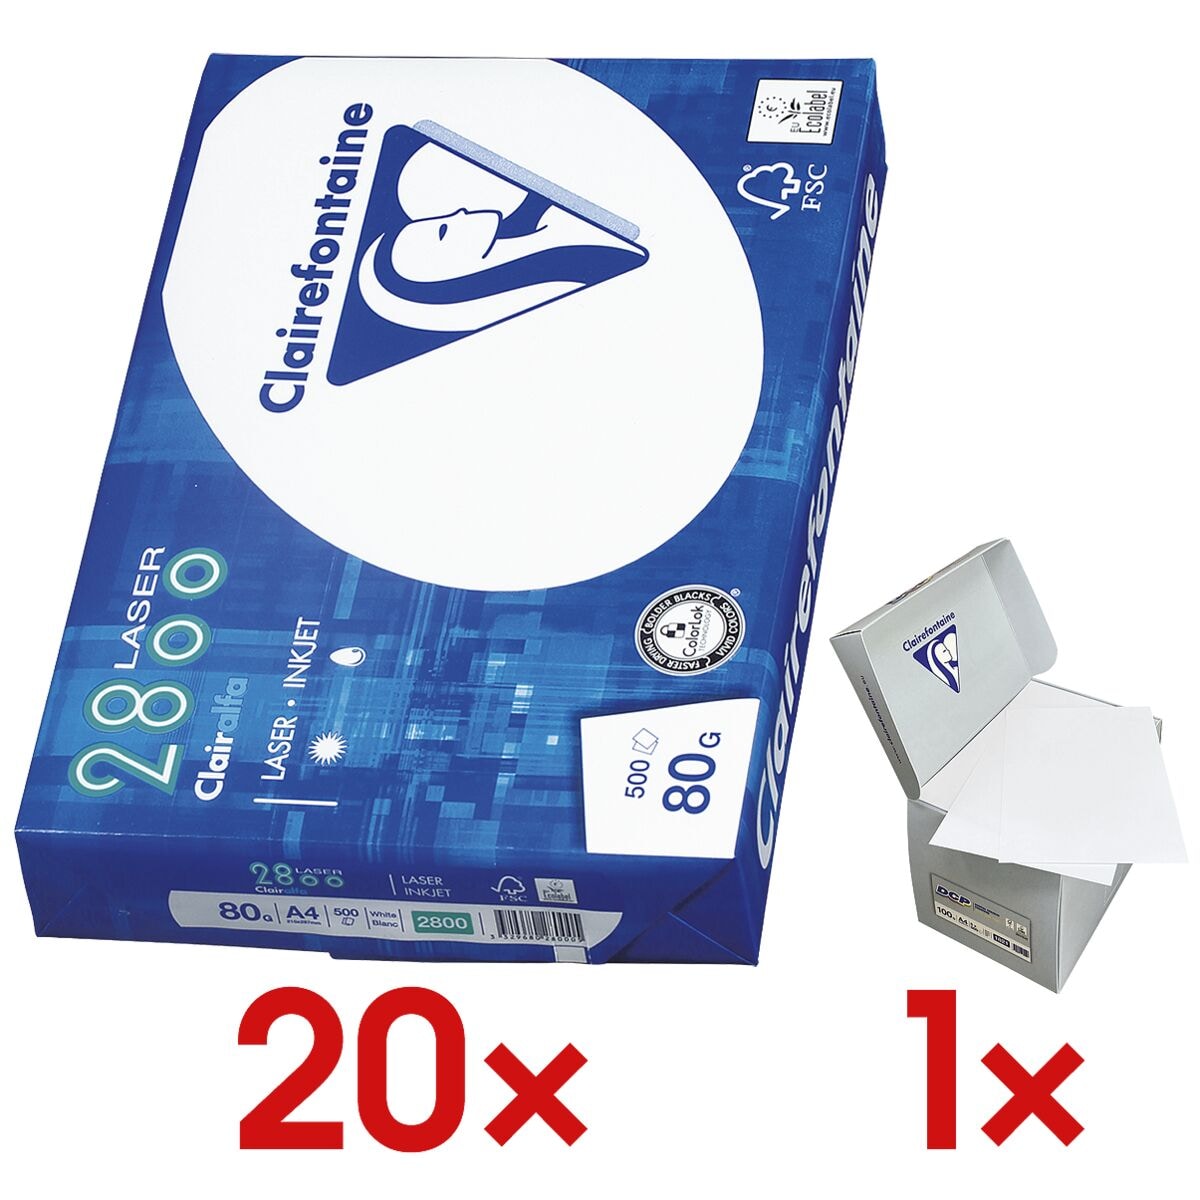 20x Multifunctioneel printpapier A4 Clairefontaine 2800 - 10000 bladen (totaal), 80g/qm incl. Verdeler voor memo's